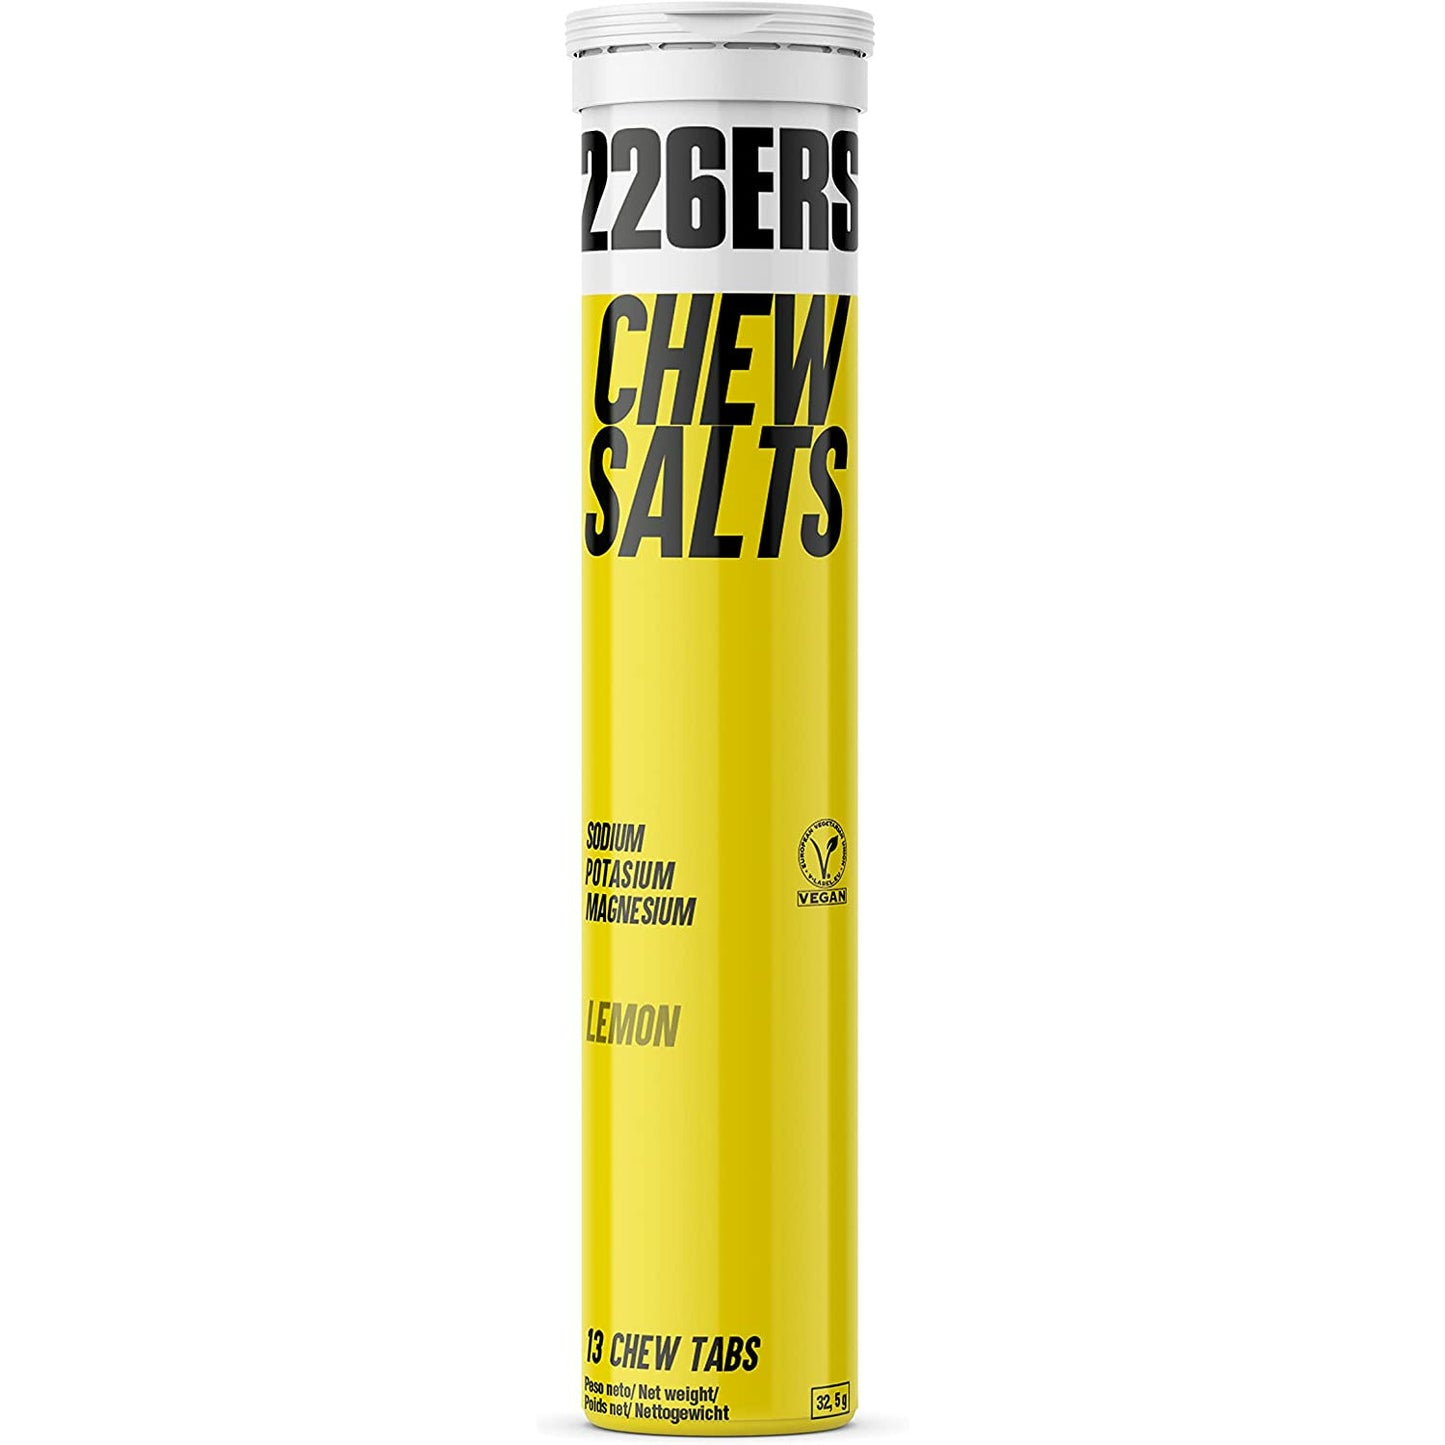 Chew Salts 13 Tabletas | 226ers - Dietetica Ferrer